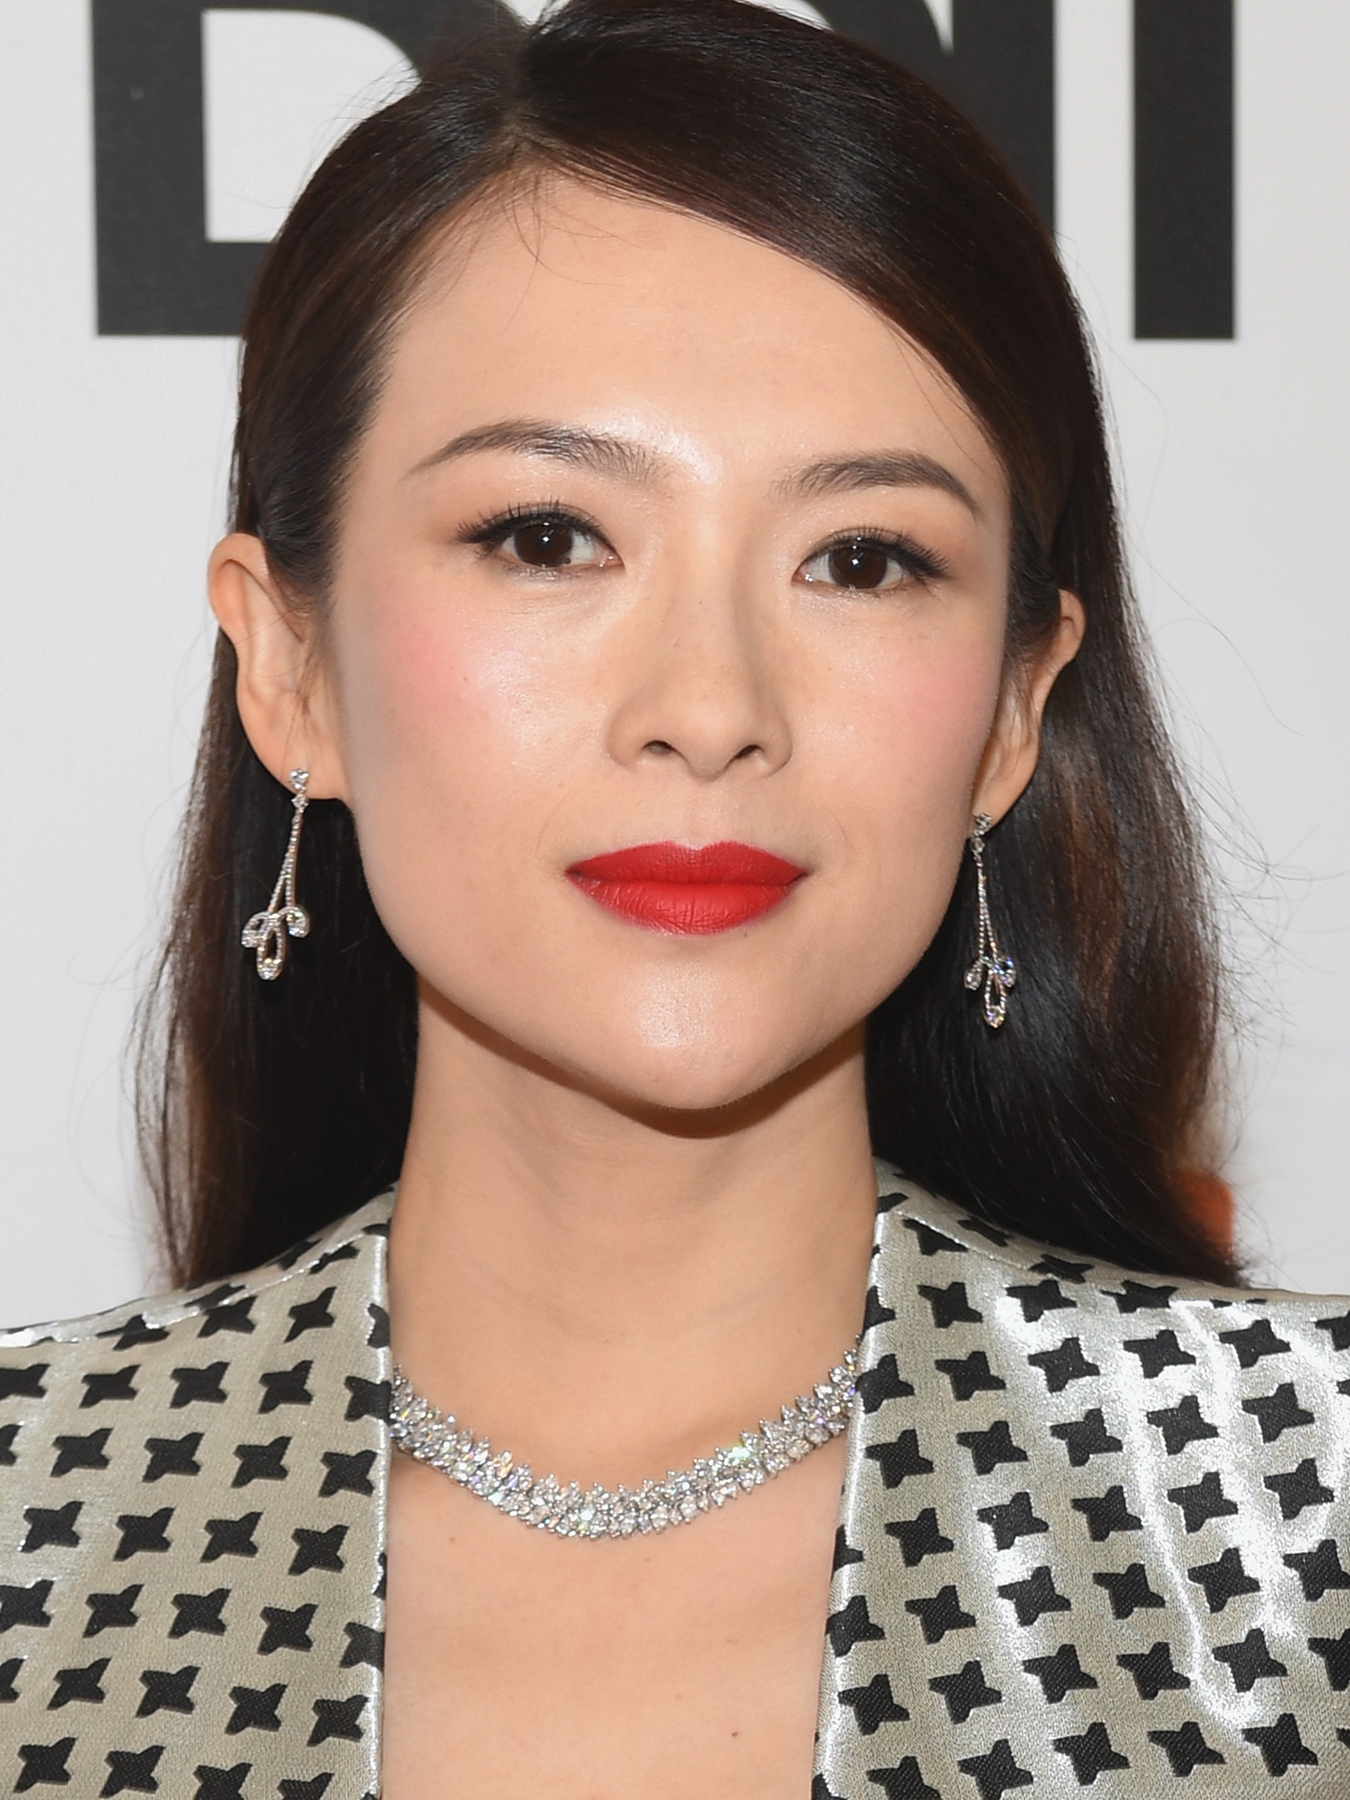 Китайская актриса Чжан Цзыи